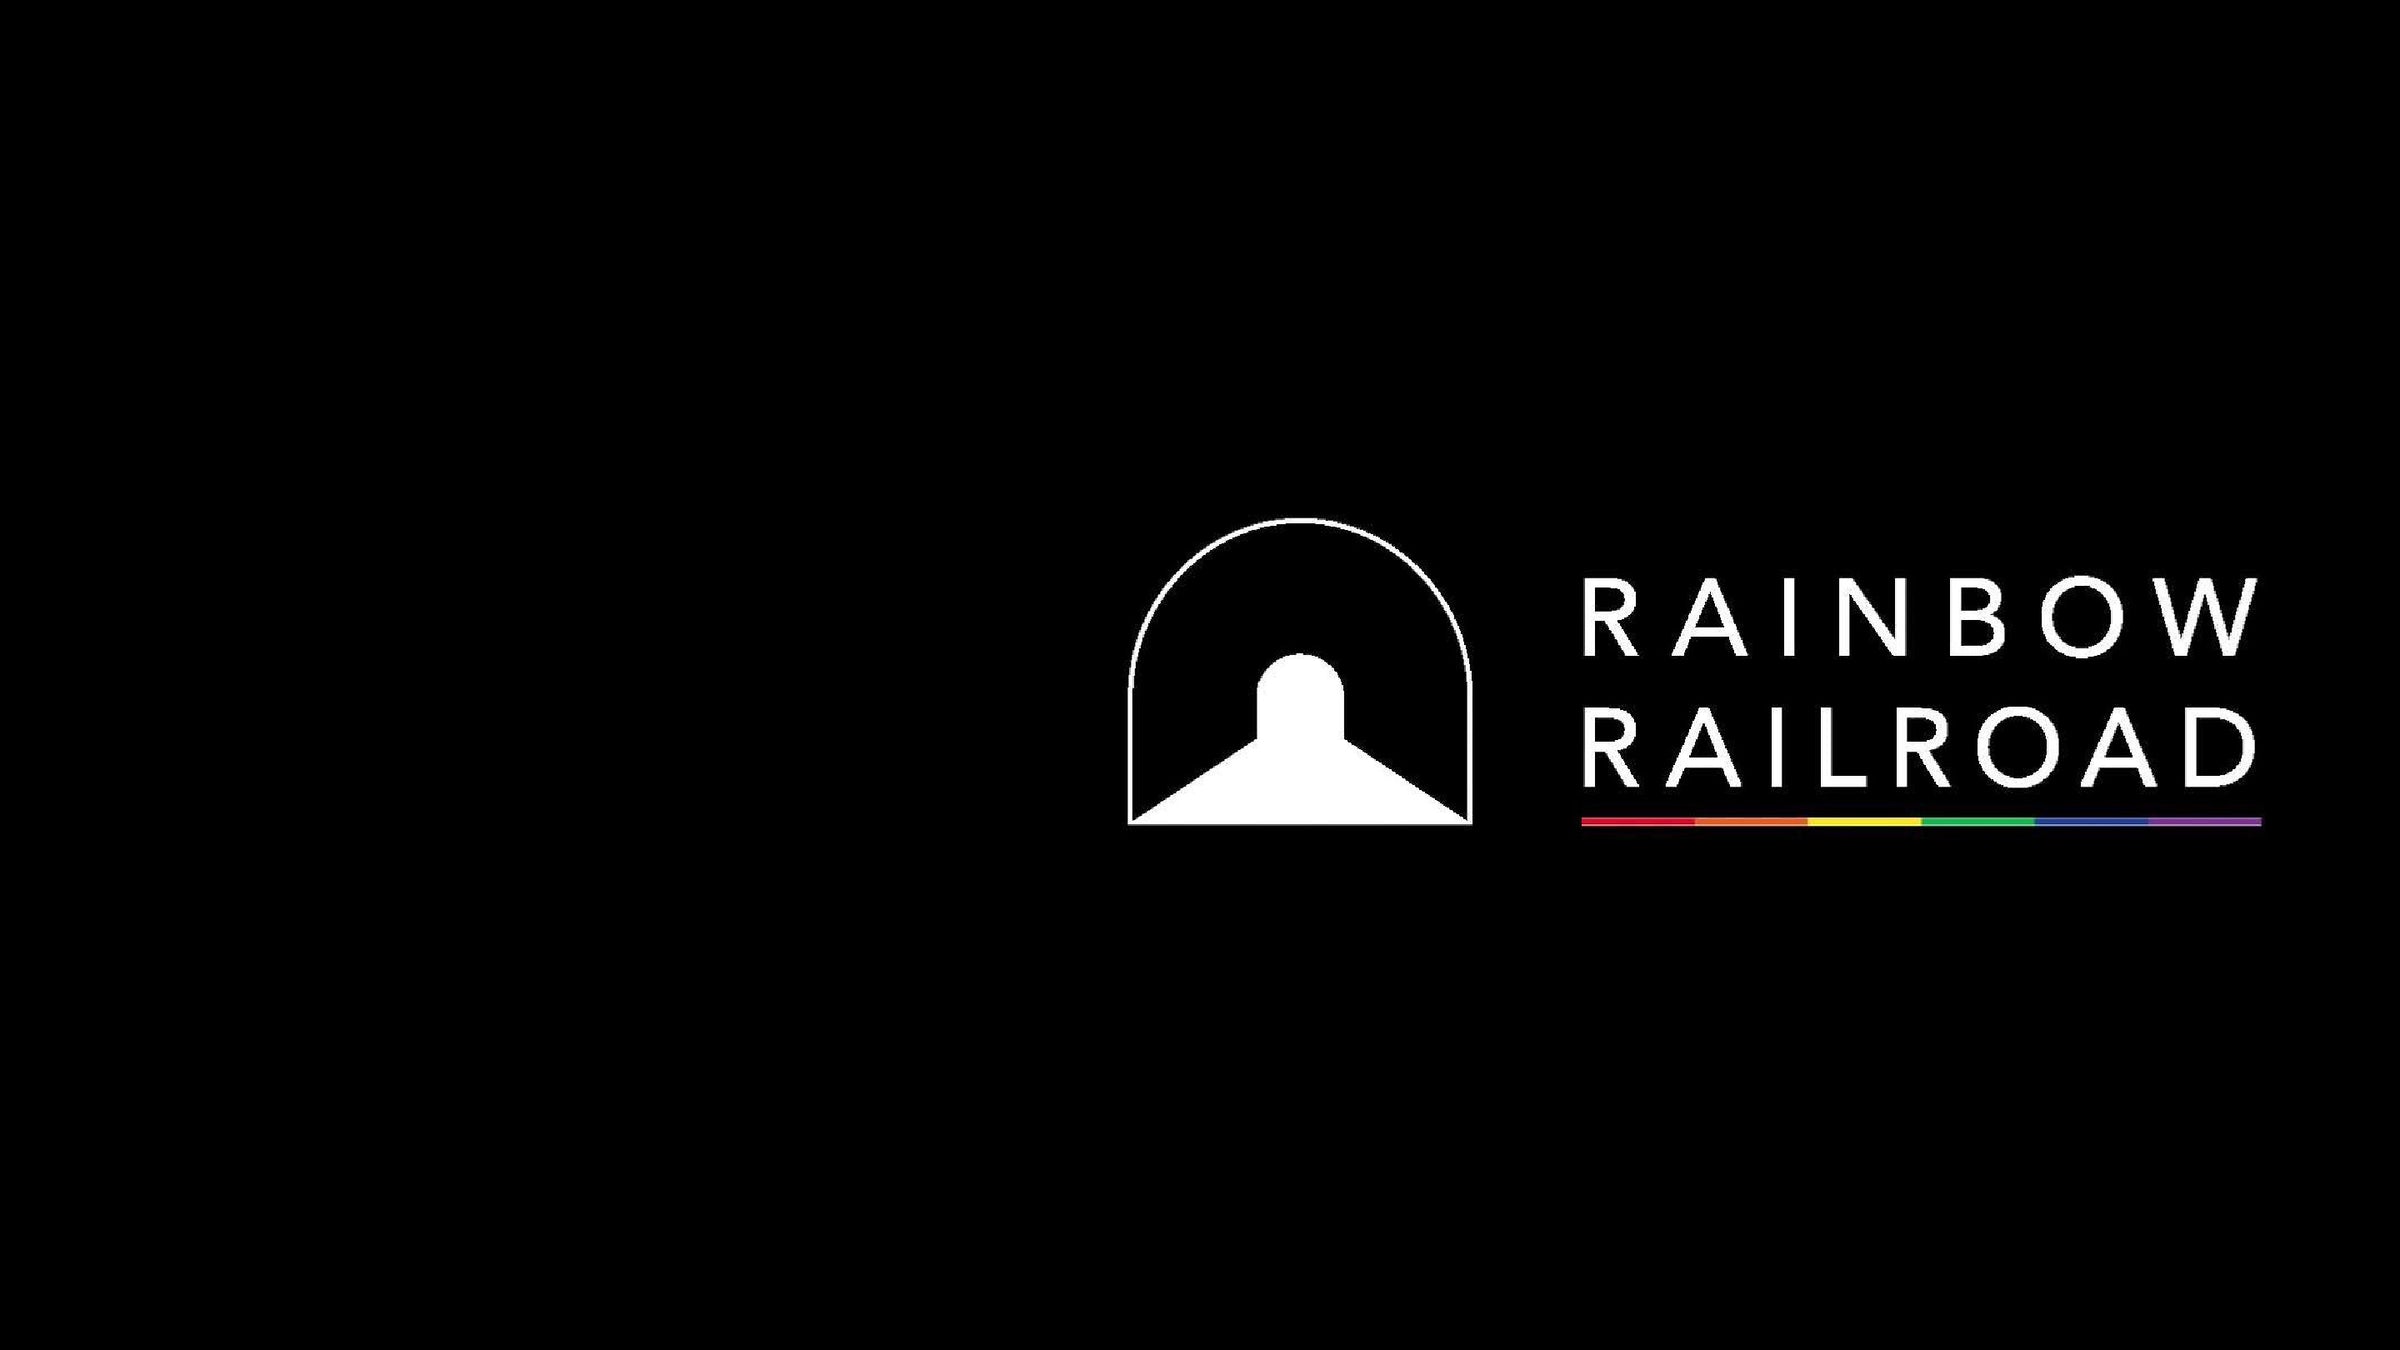 Rainbow Railroad #savelgbtlives #twomenkissing #twowomenkissing